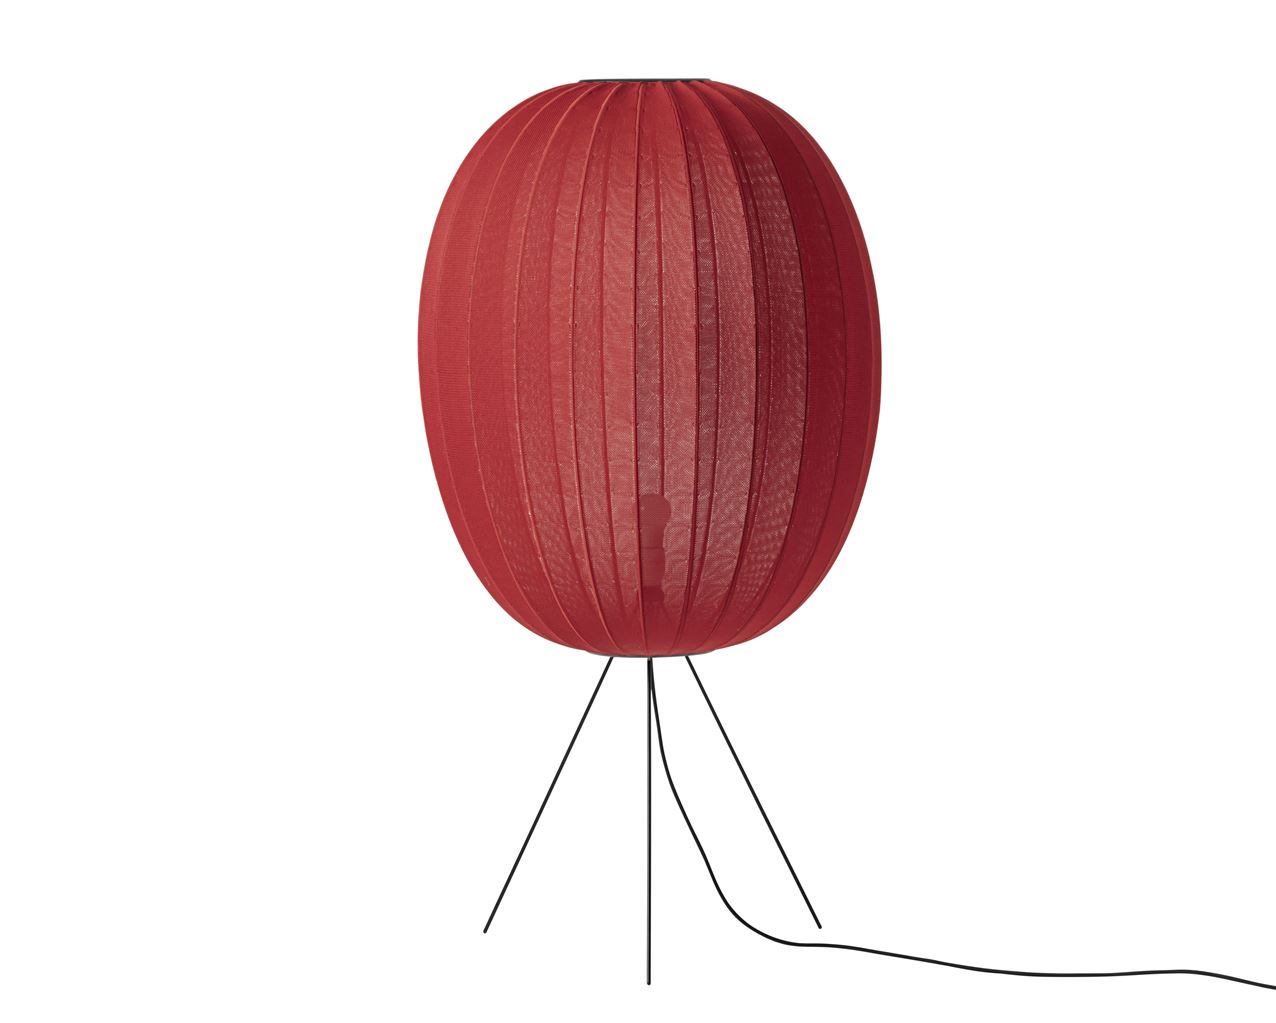 Billede af Made By Hand Knit-Wit Oval Floor Medium Ø: 65 cm - Maple Red